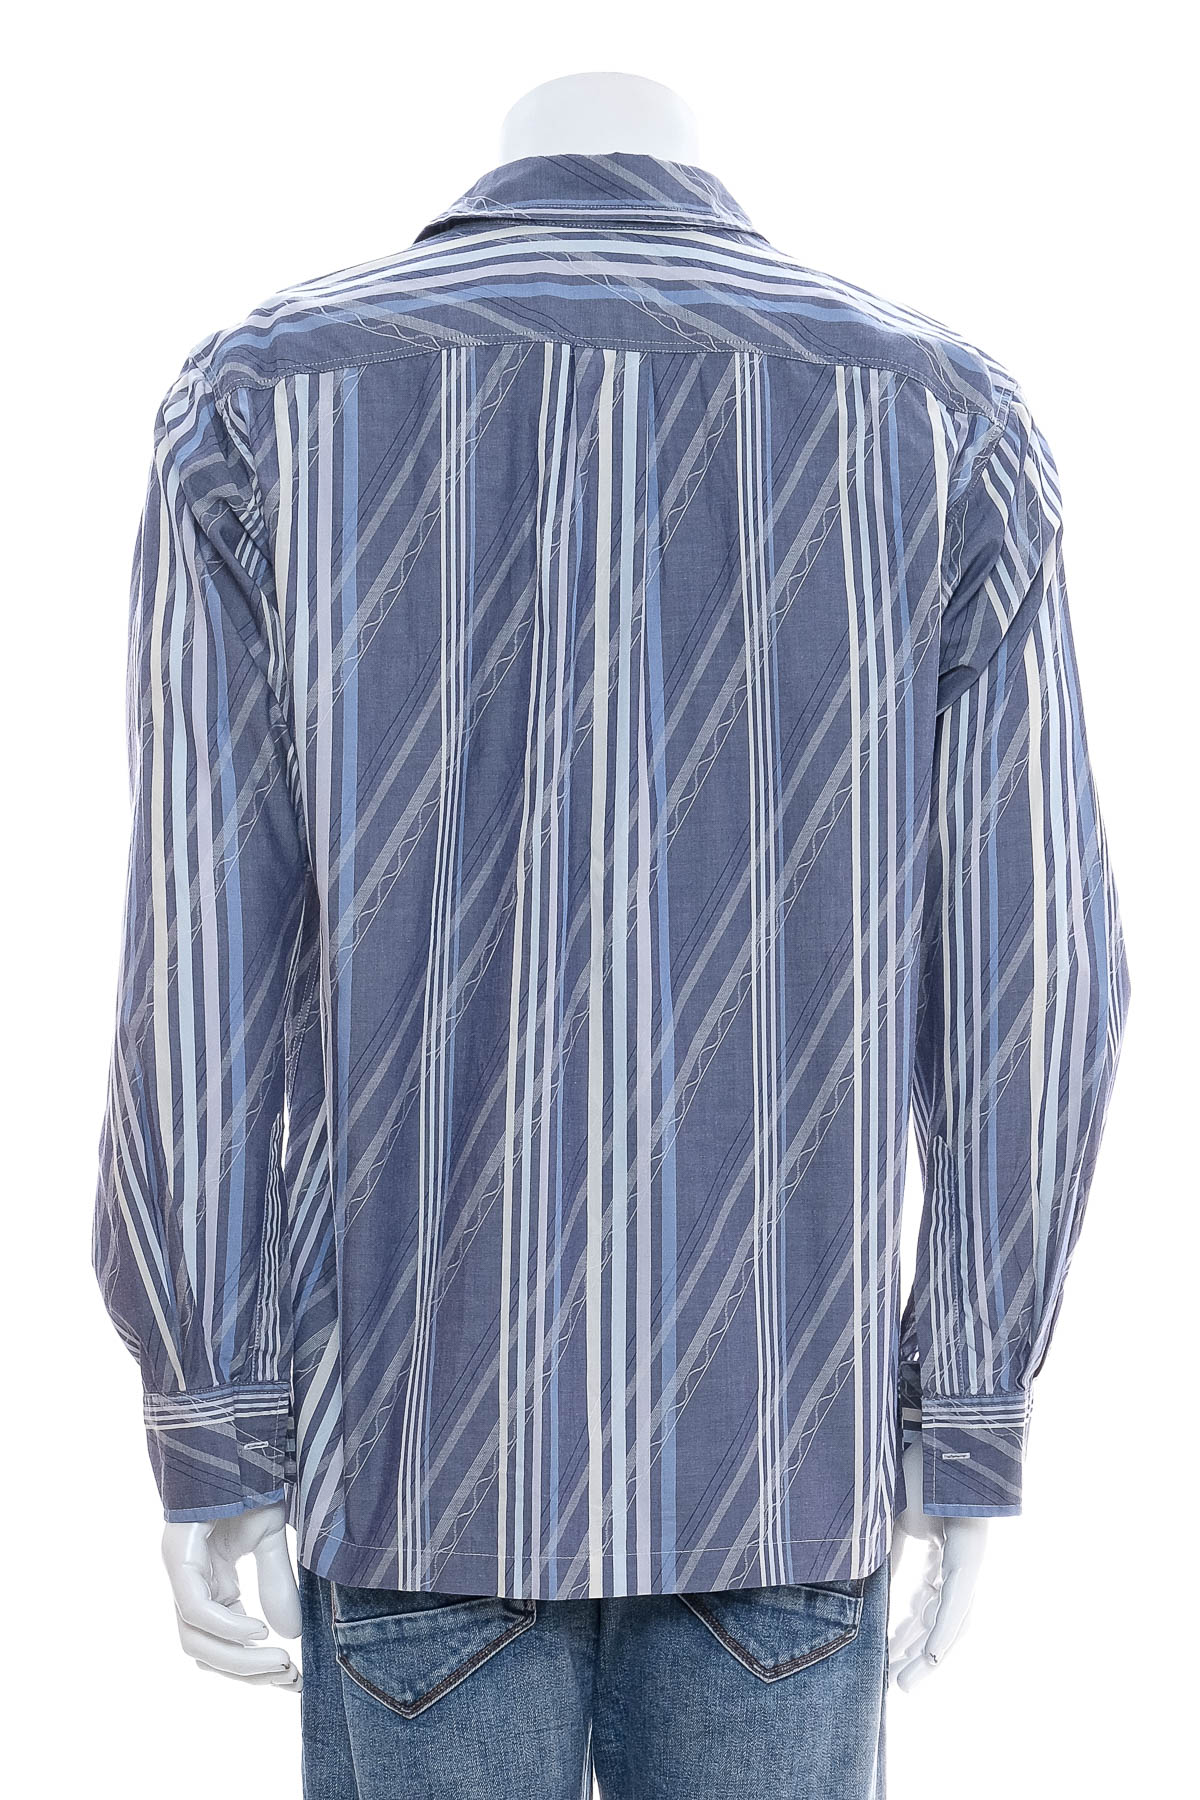 Ανδρικό πουκάμισο - Paul Smith - 1